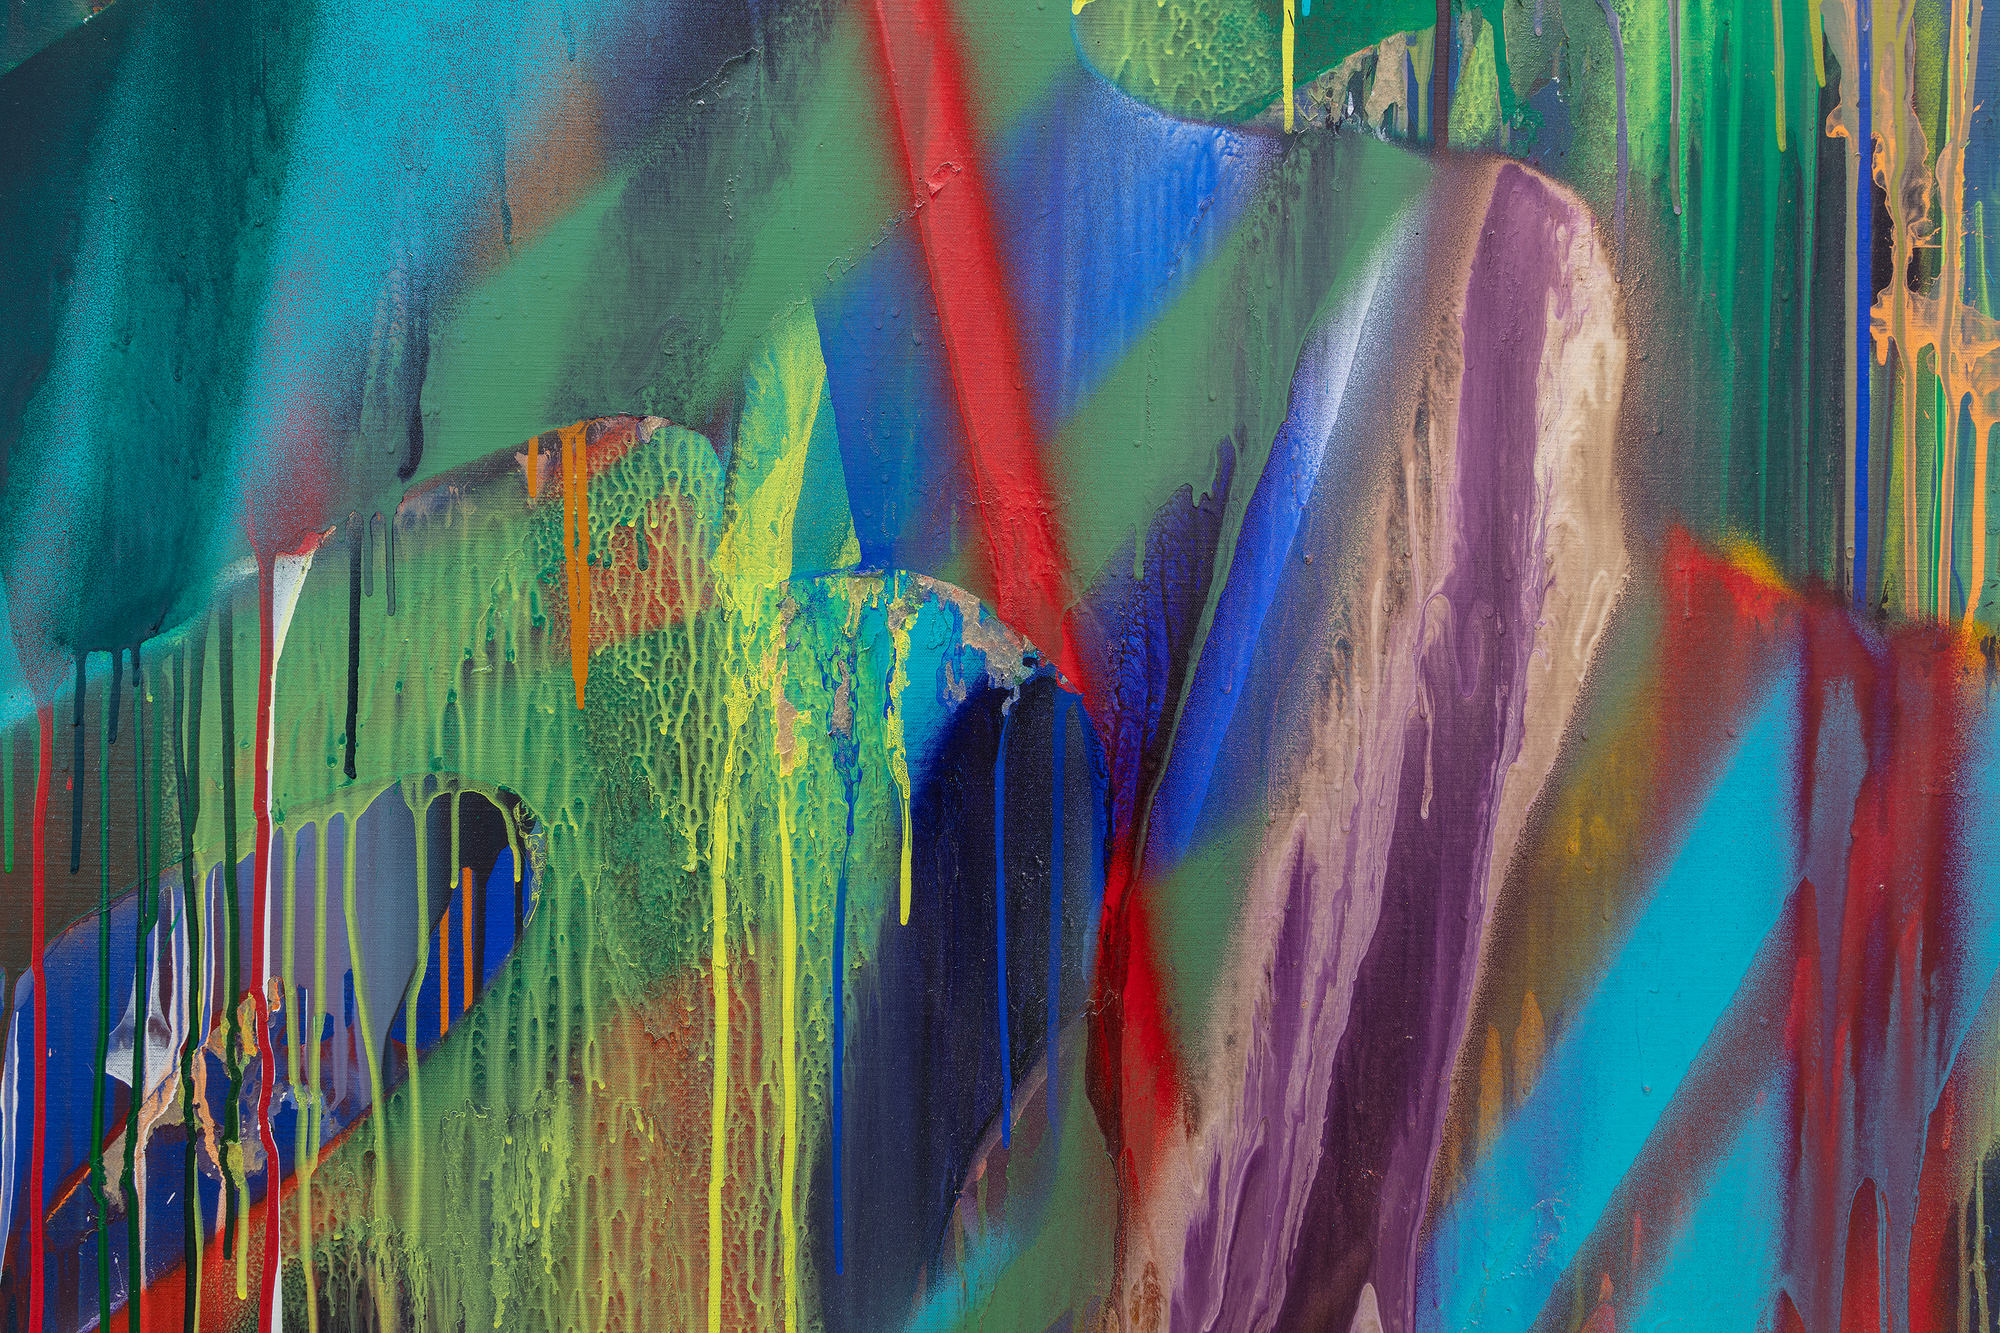 Katharine Grosse&#039;s Untitled von 2016 erweitert unsere Wertschätzung für eine Künstlerin, die dieselbe Energie, Kühnheit und Missachtung von Konventionen wie in ihren monumentalen architektonischen Installationen auf das traditionelle Medium der Farbe auf Leinwand überträgt. Die Farbe explodiert auf einer komplexen, reich geschichteten Oberfläche aus gegossenen Farbaufträgen, die verlaufen, nieseln oder spritzen, aus leuchtenden, transparenten Schleiern und sich überlagernden Farbbändern, die zu weichen Farbübergängen vernebelt werden. Das Ergebnis ist ein faszinierender Eindruck von räumlicher Tiefe und Dreidimensionalität. Es ist aber auch eine Meisterleistung, die Grosse&#039;s Brillanz in der Verbindung von Chaos und Kontrolle, Spontaneität und Absicht offenbart. Ihre Palette an Techniken schafft einen fesselnden Dialog zwischen dem Zufälligen und dem Geplanten, ein Markenzeichen ihres einzigartigen Stils.